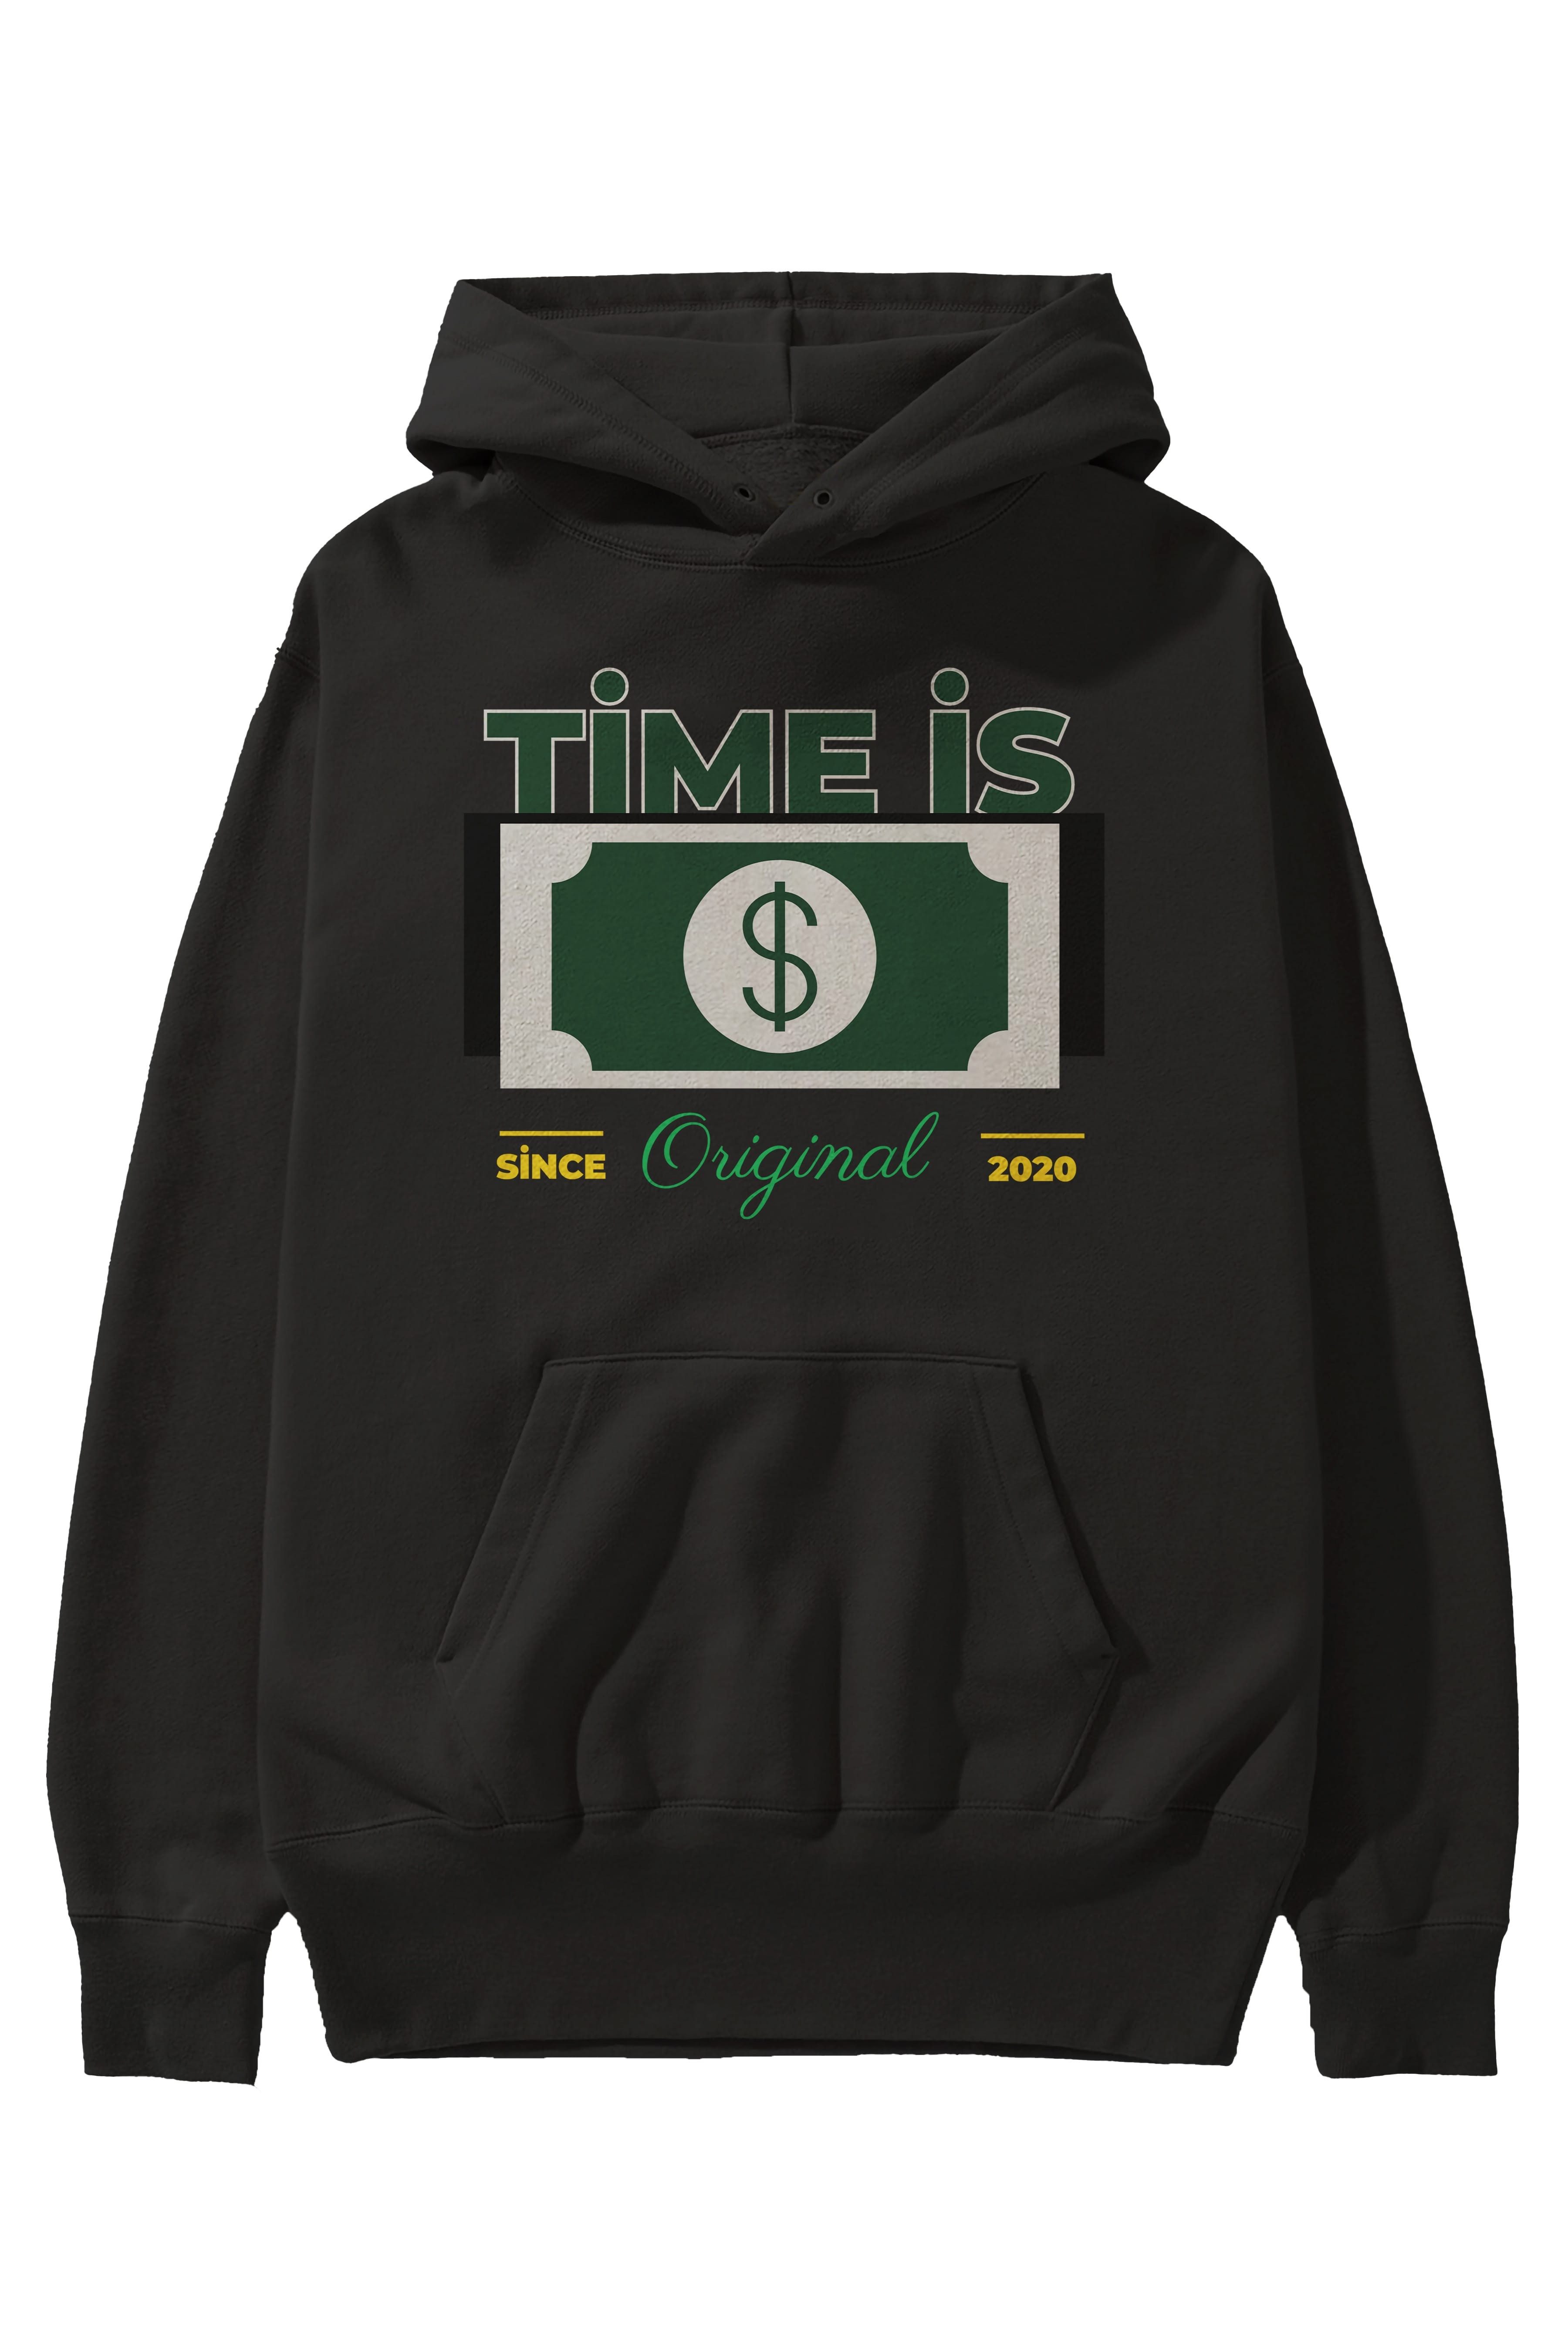 Time is Original Ön Baskılı Oversize Hoodie Kapüşonlu Sweatshirt Erkek Kadın Unisex